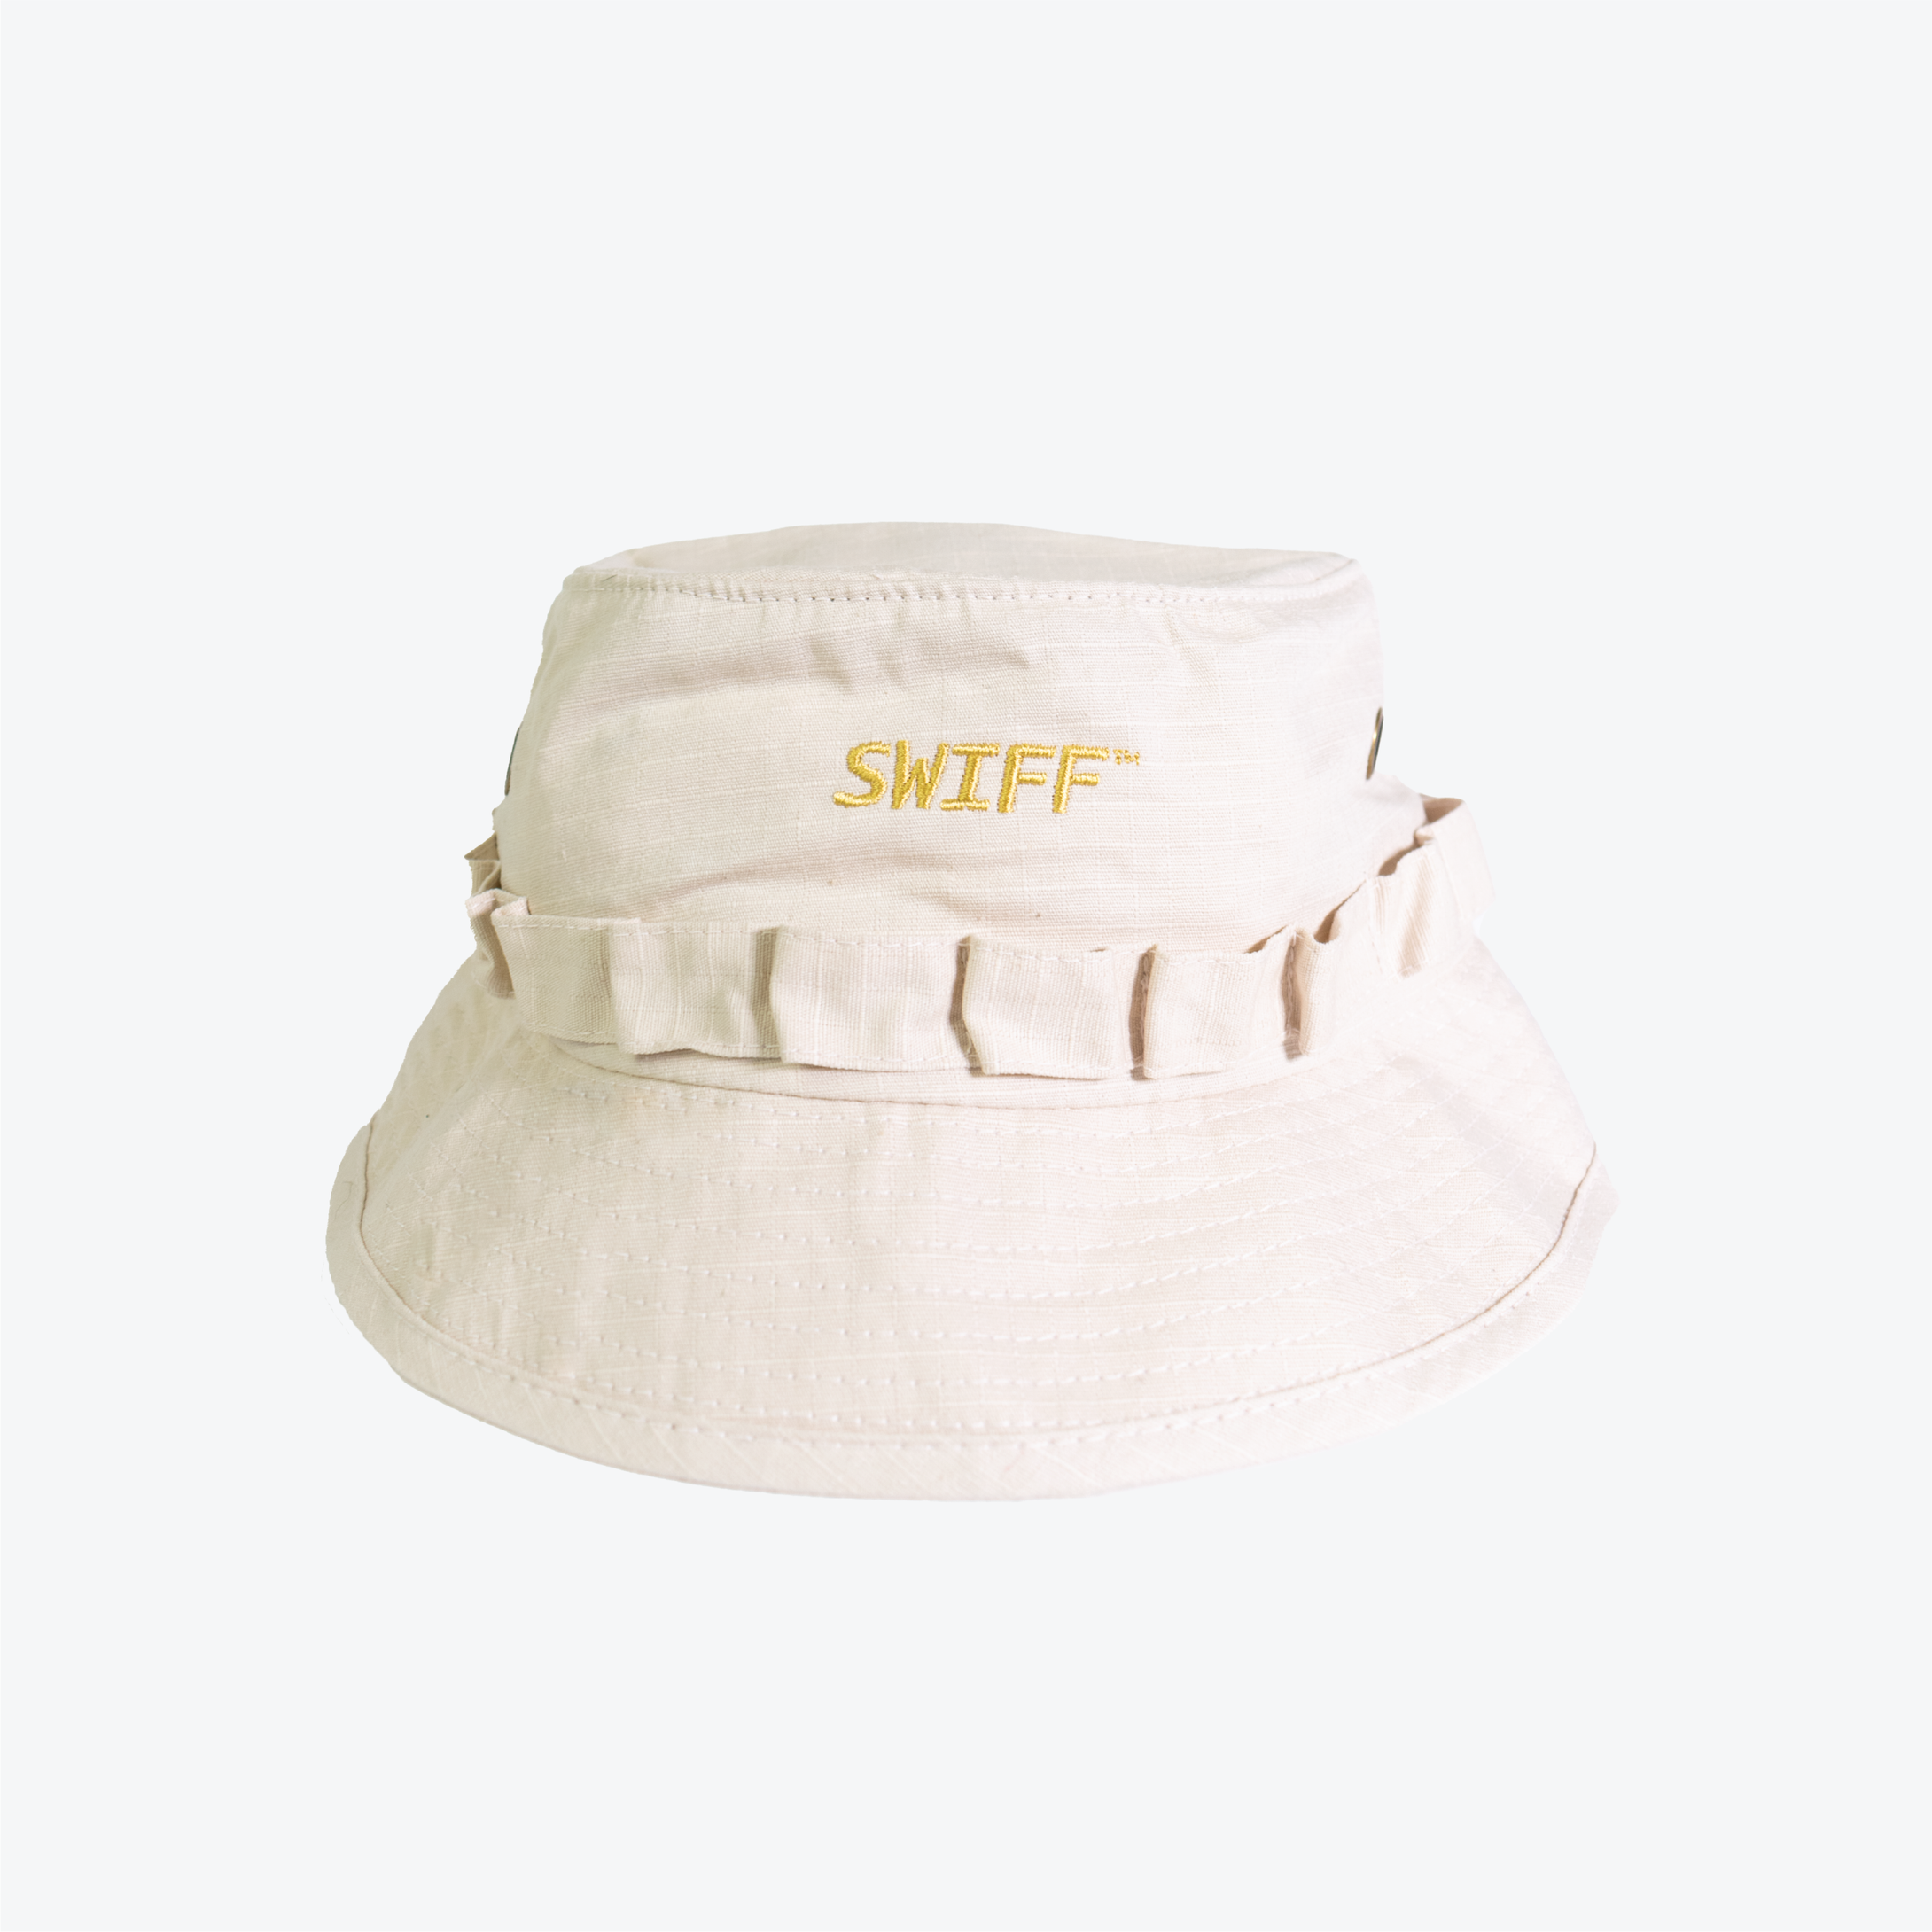 SWIFF Boonie Hat